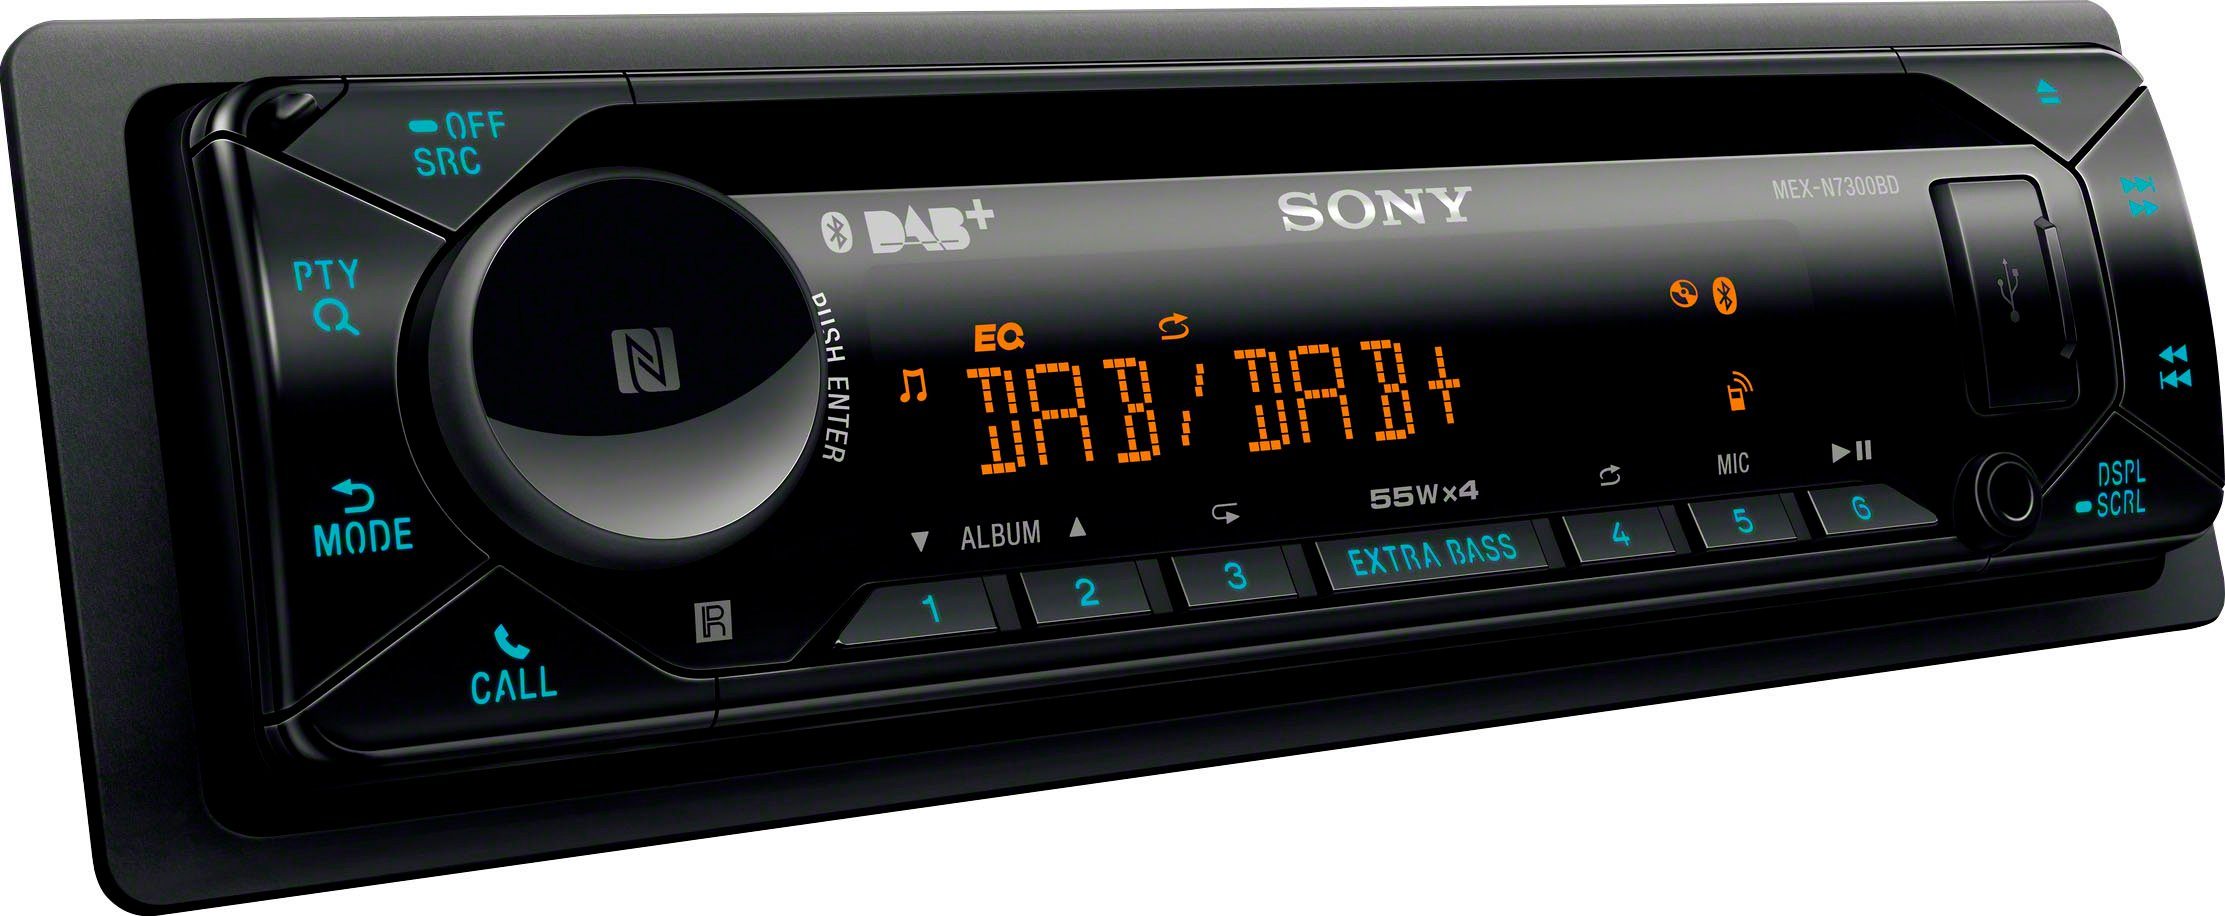 (Digitalradio W) Autoradio MEXN7300KIT Sony (DAB), 55